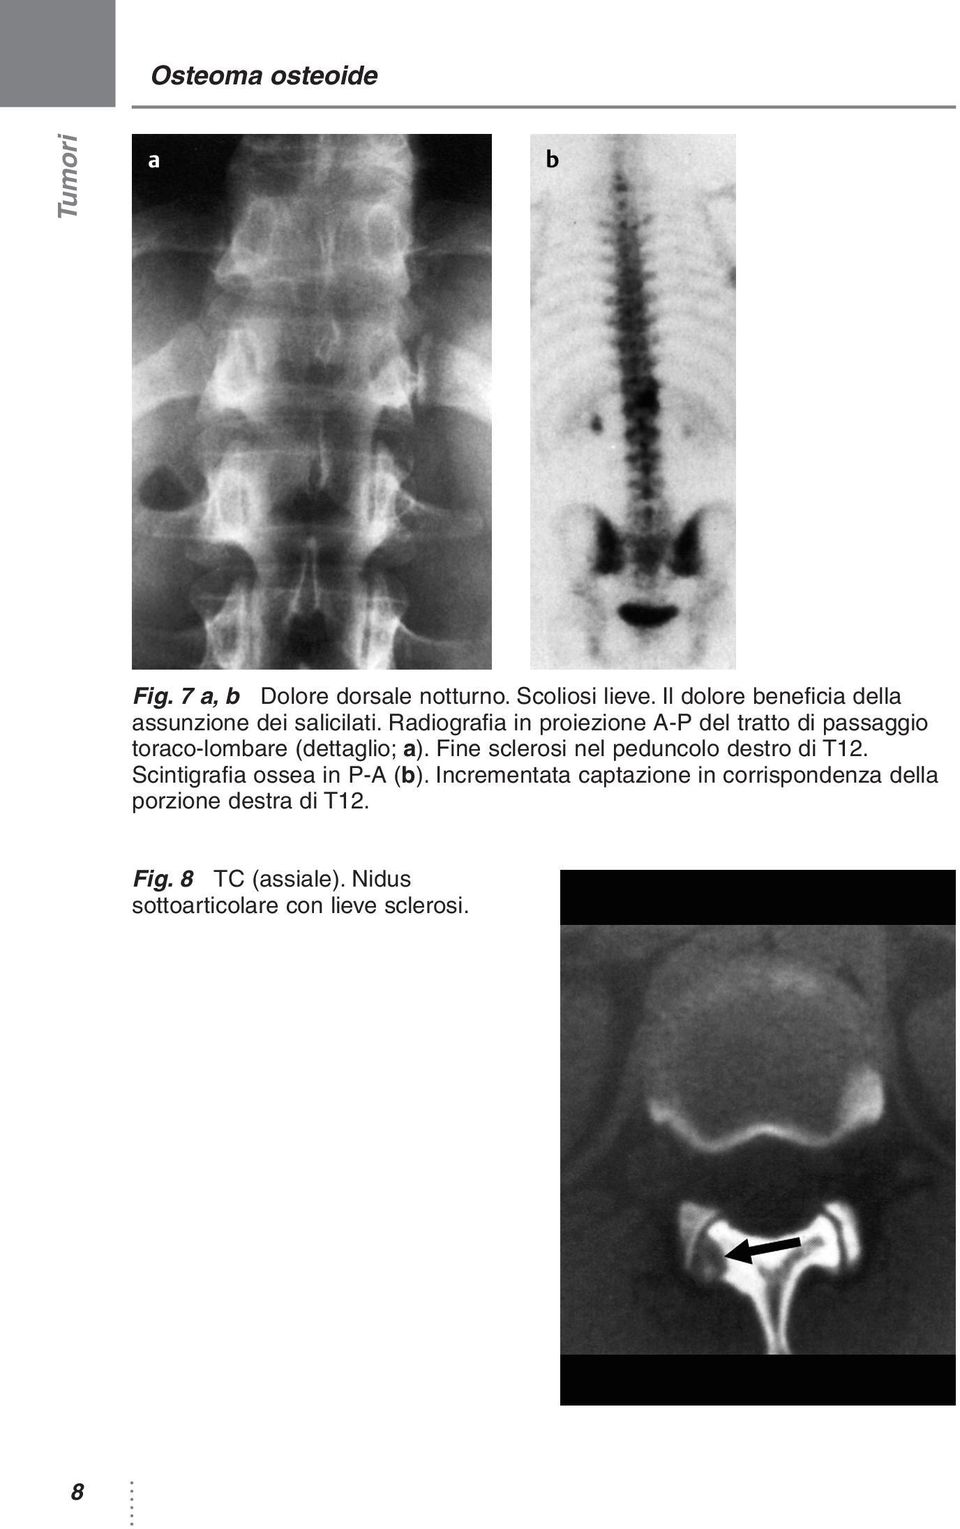 Radiografia in proiezione A-P del tratto di passaggio toraco-lombare (dettaglio; a).